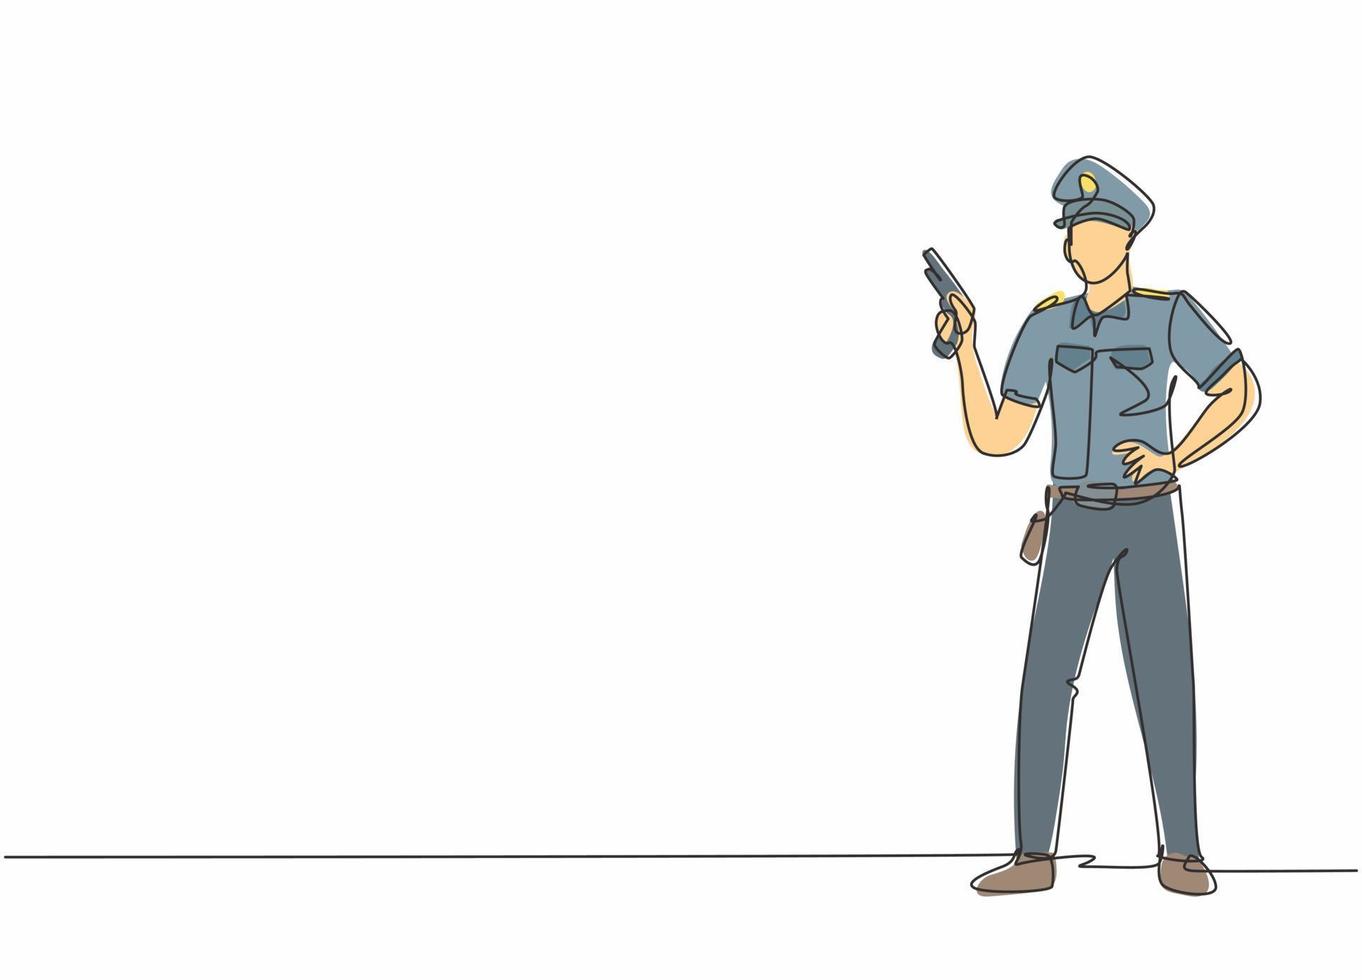 einzelne eine Linie, die junge Polizisten posiert, die stehen, während sie eine automatische Handfeuerwaffe halten. professionelle Arbeit Beruf Beruf minimales Konzept. durchgehende Linie zeichnen Design-Grafik-Vektor-Illustration vektor